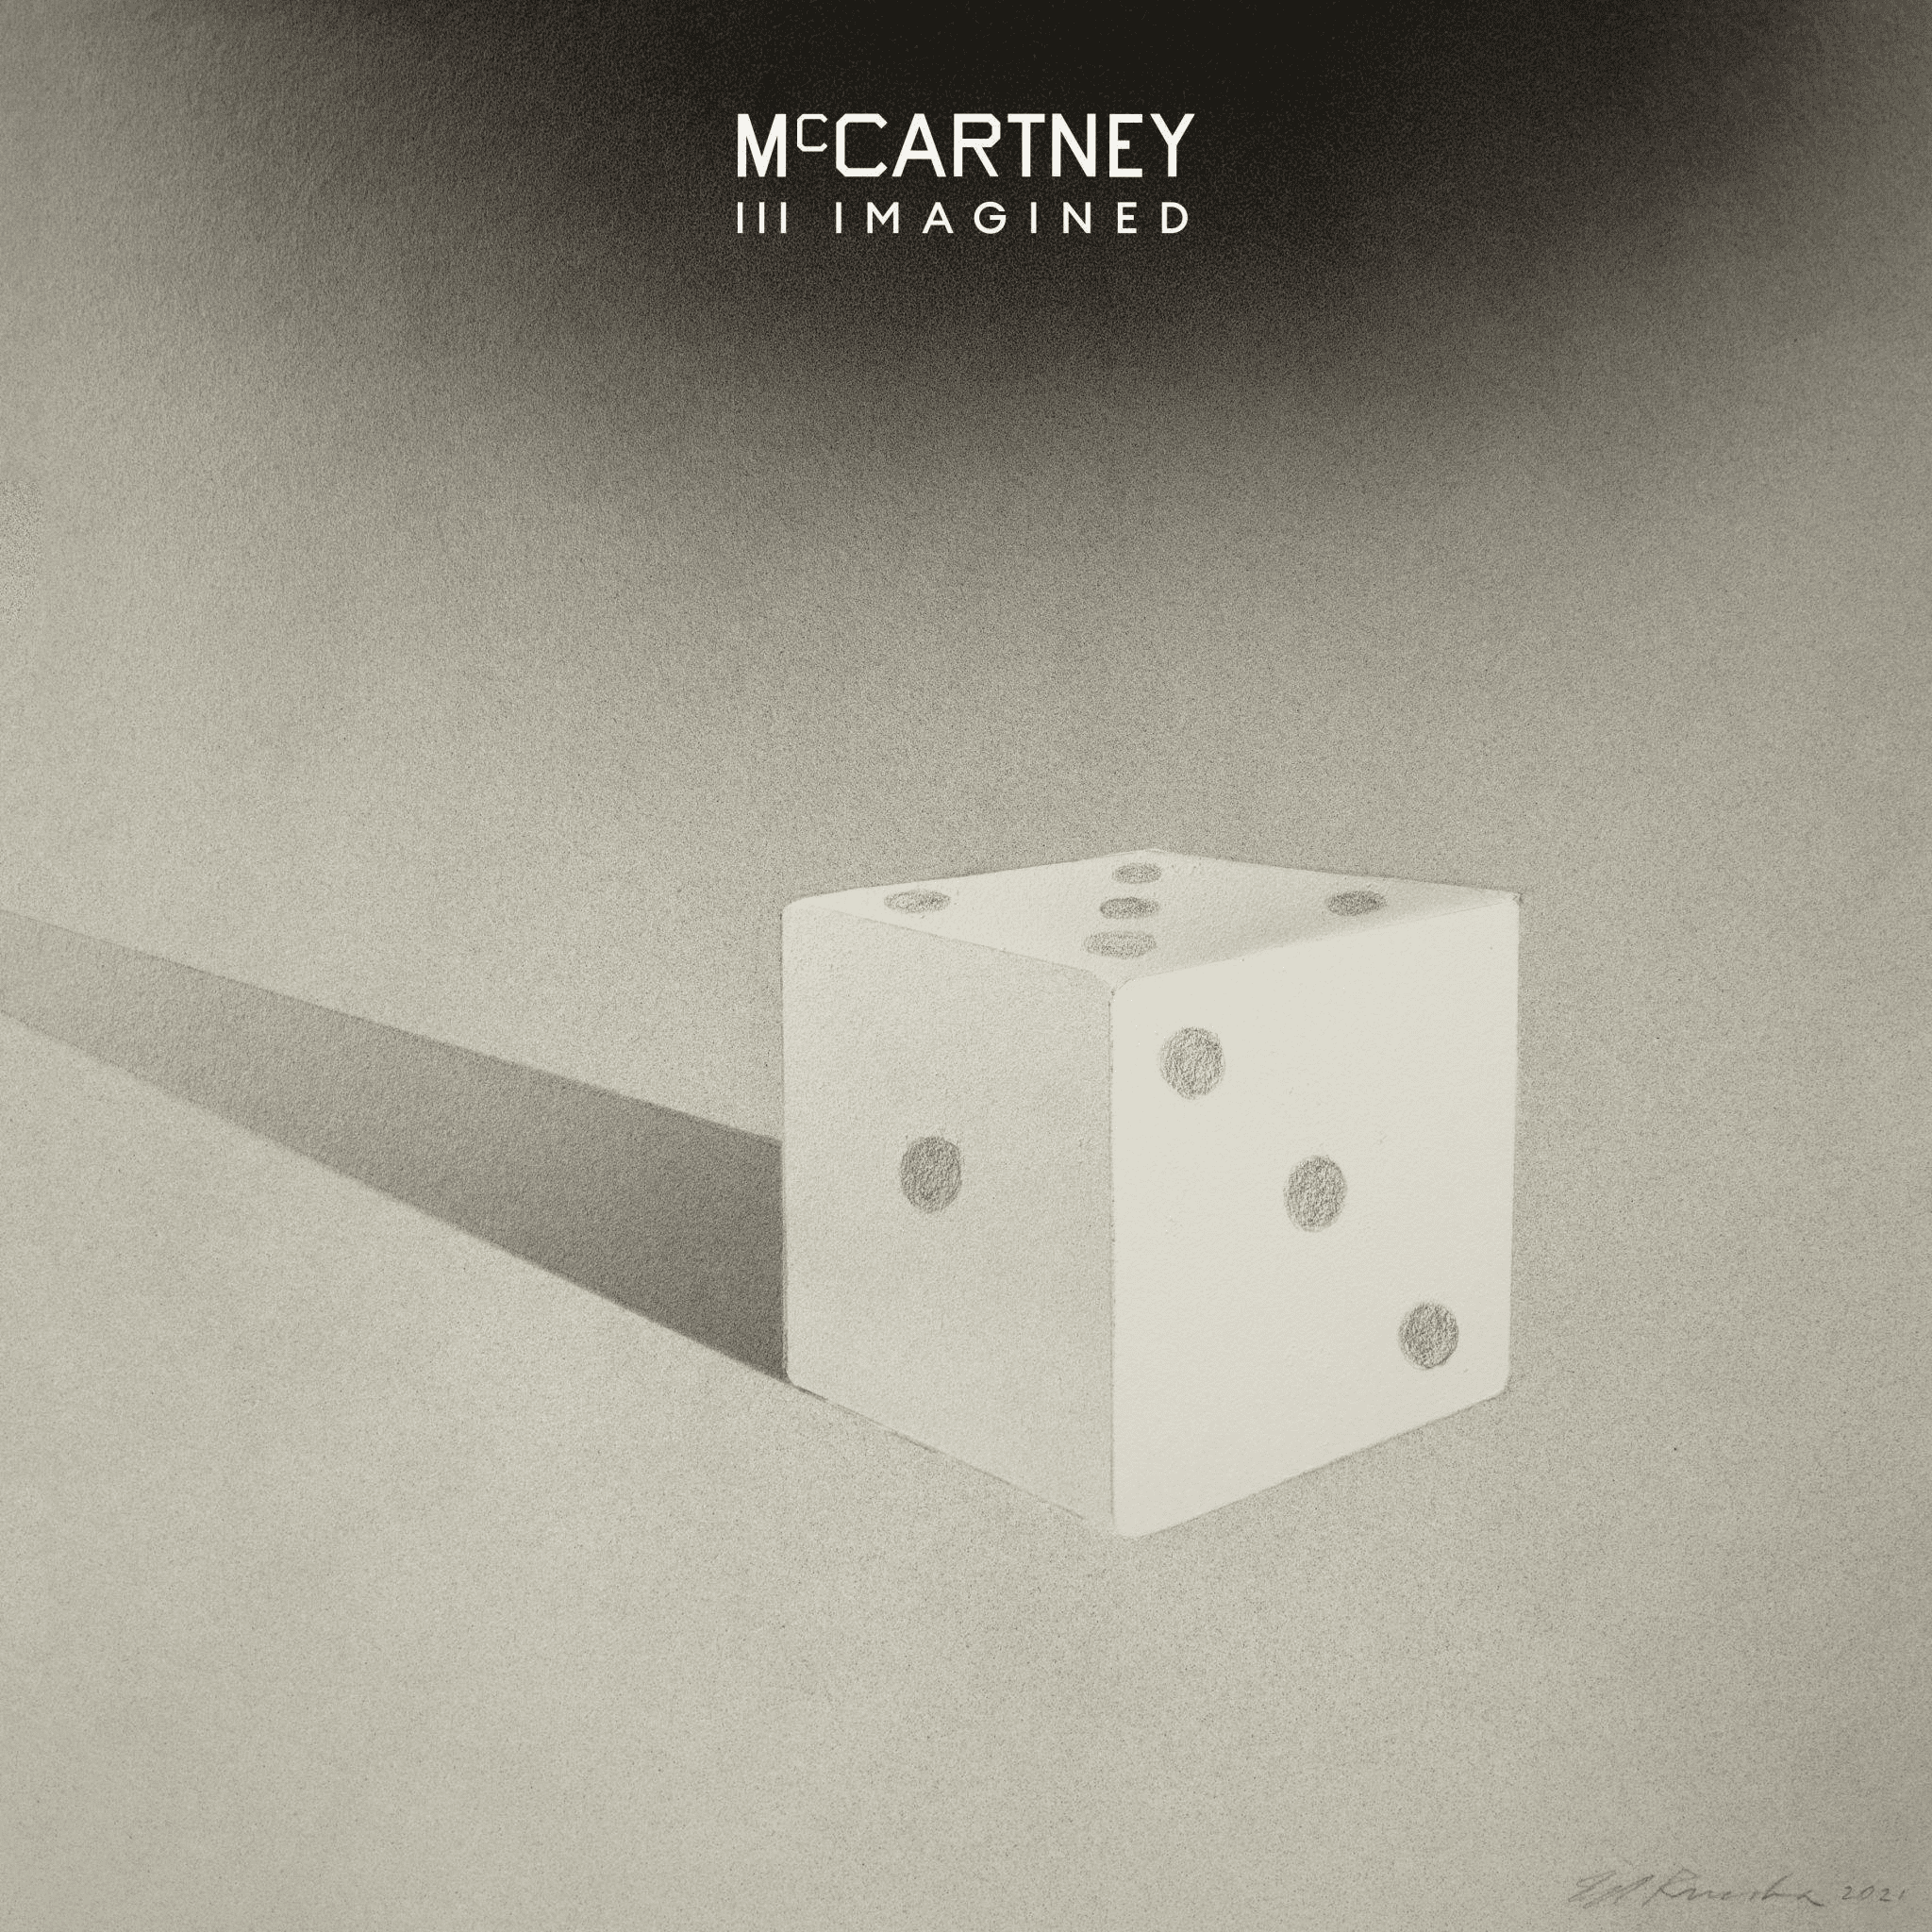 PAUL MCCARTNEY - Mccartney III Imagined Vinyl - JWrayRecords